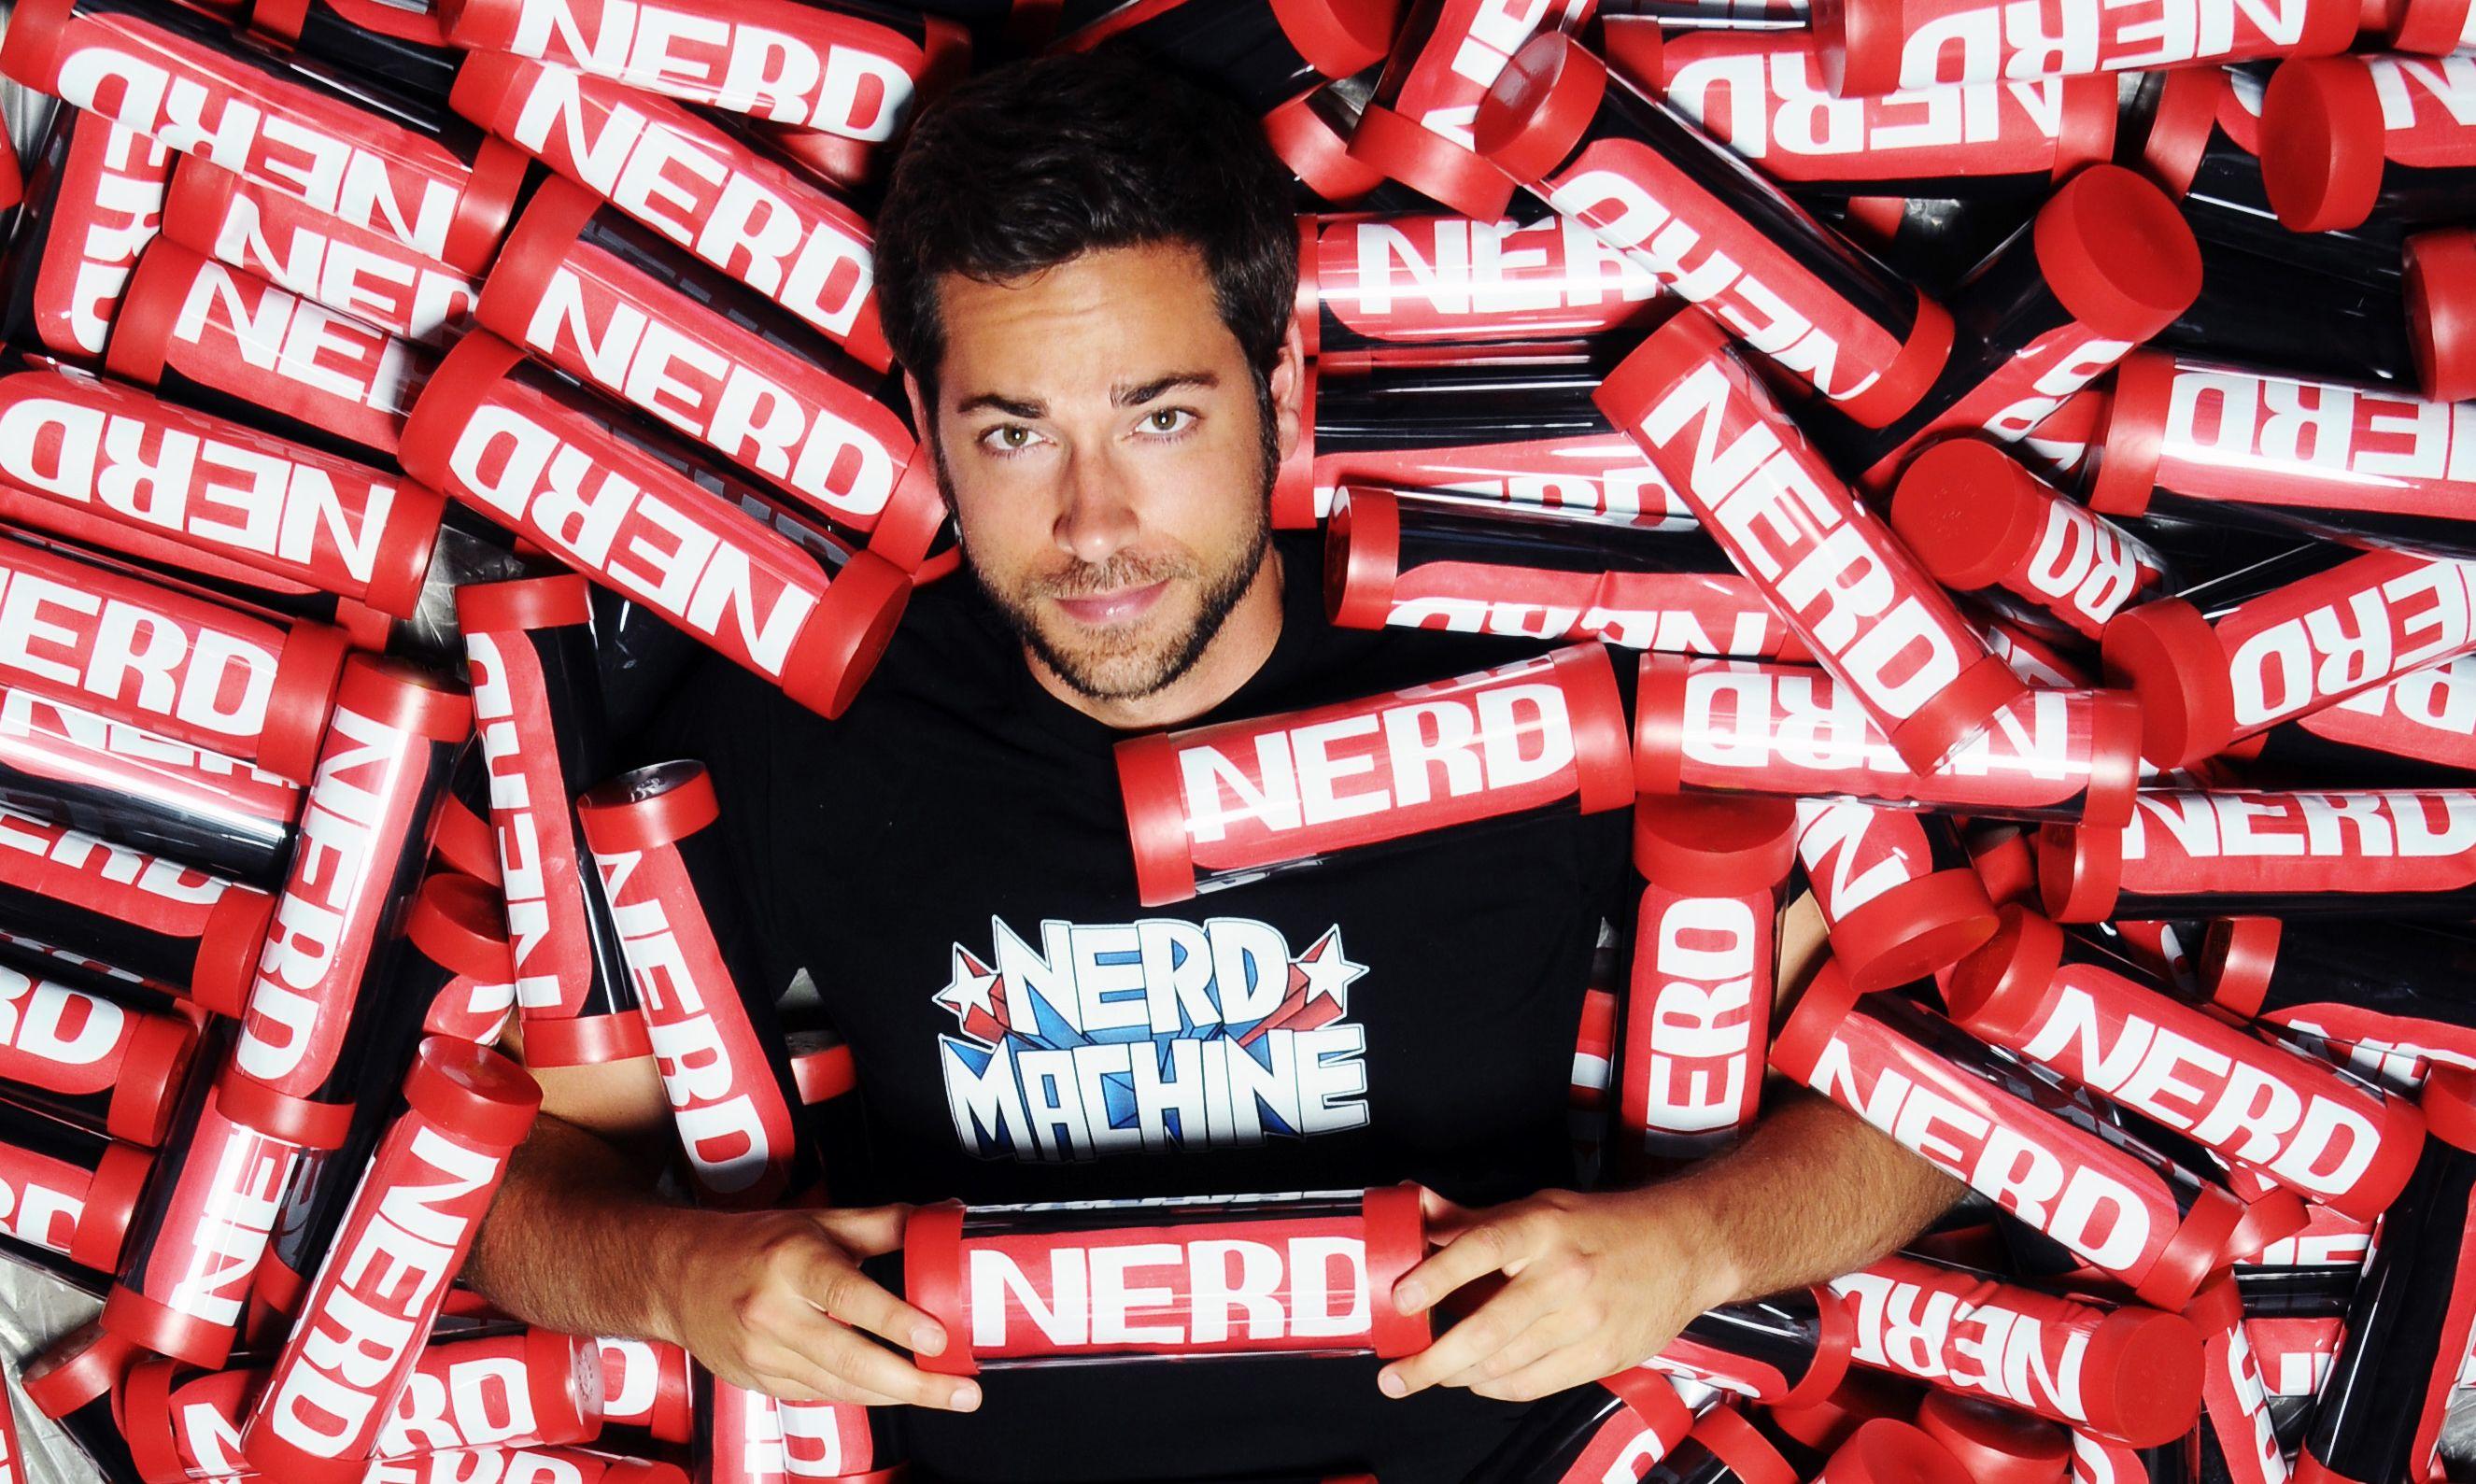 I Want My Nerd HQ 2014